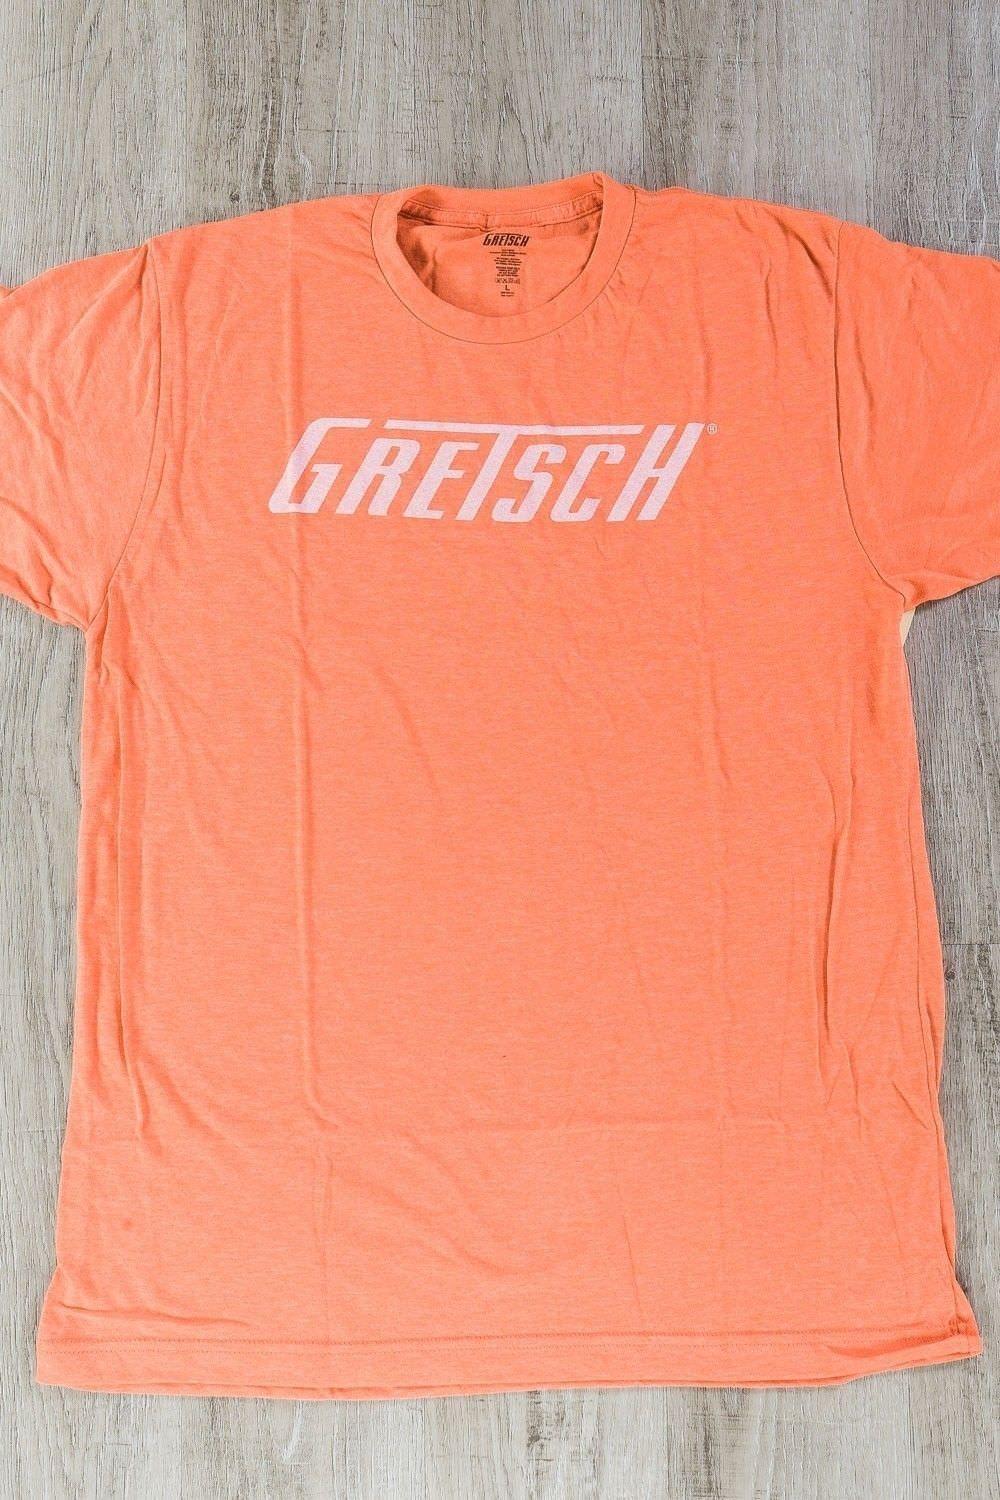 Large Red P Logo - Gretsch Logo T Shirt Orange Large Short Sleeve Tee Shirt P N 0994876606